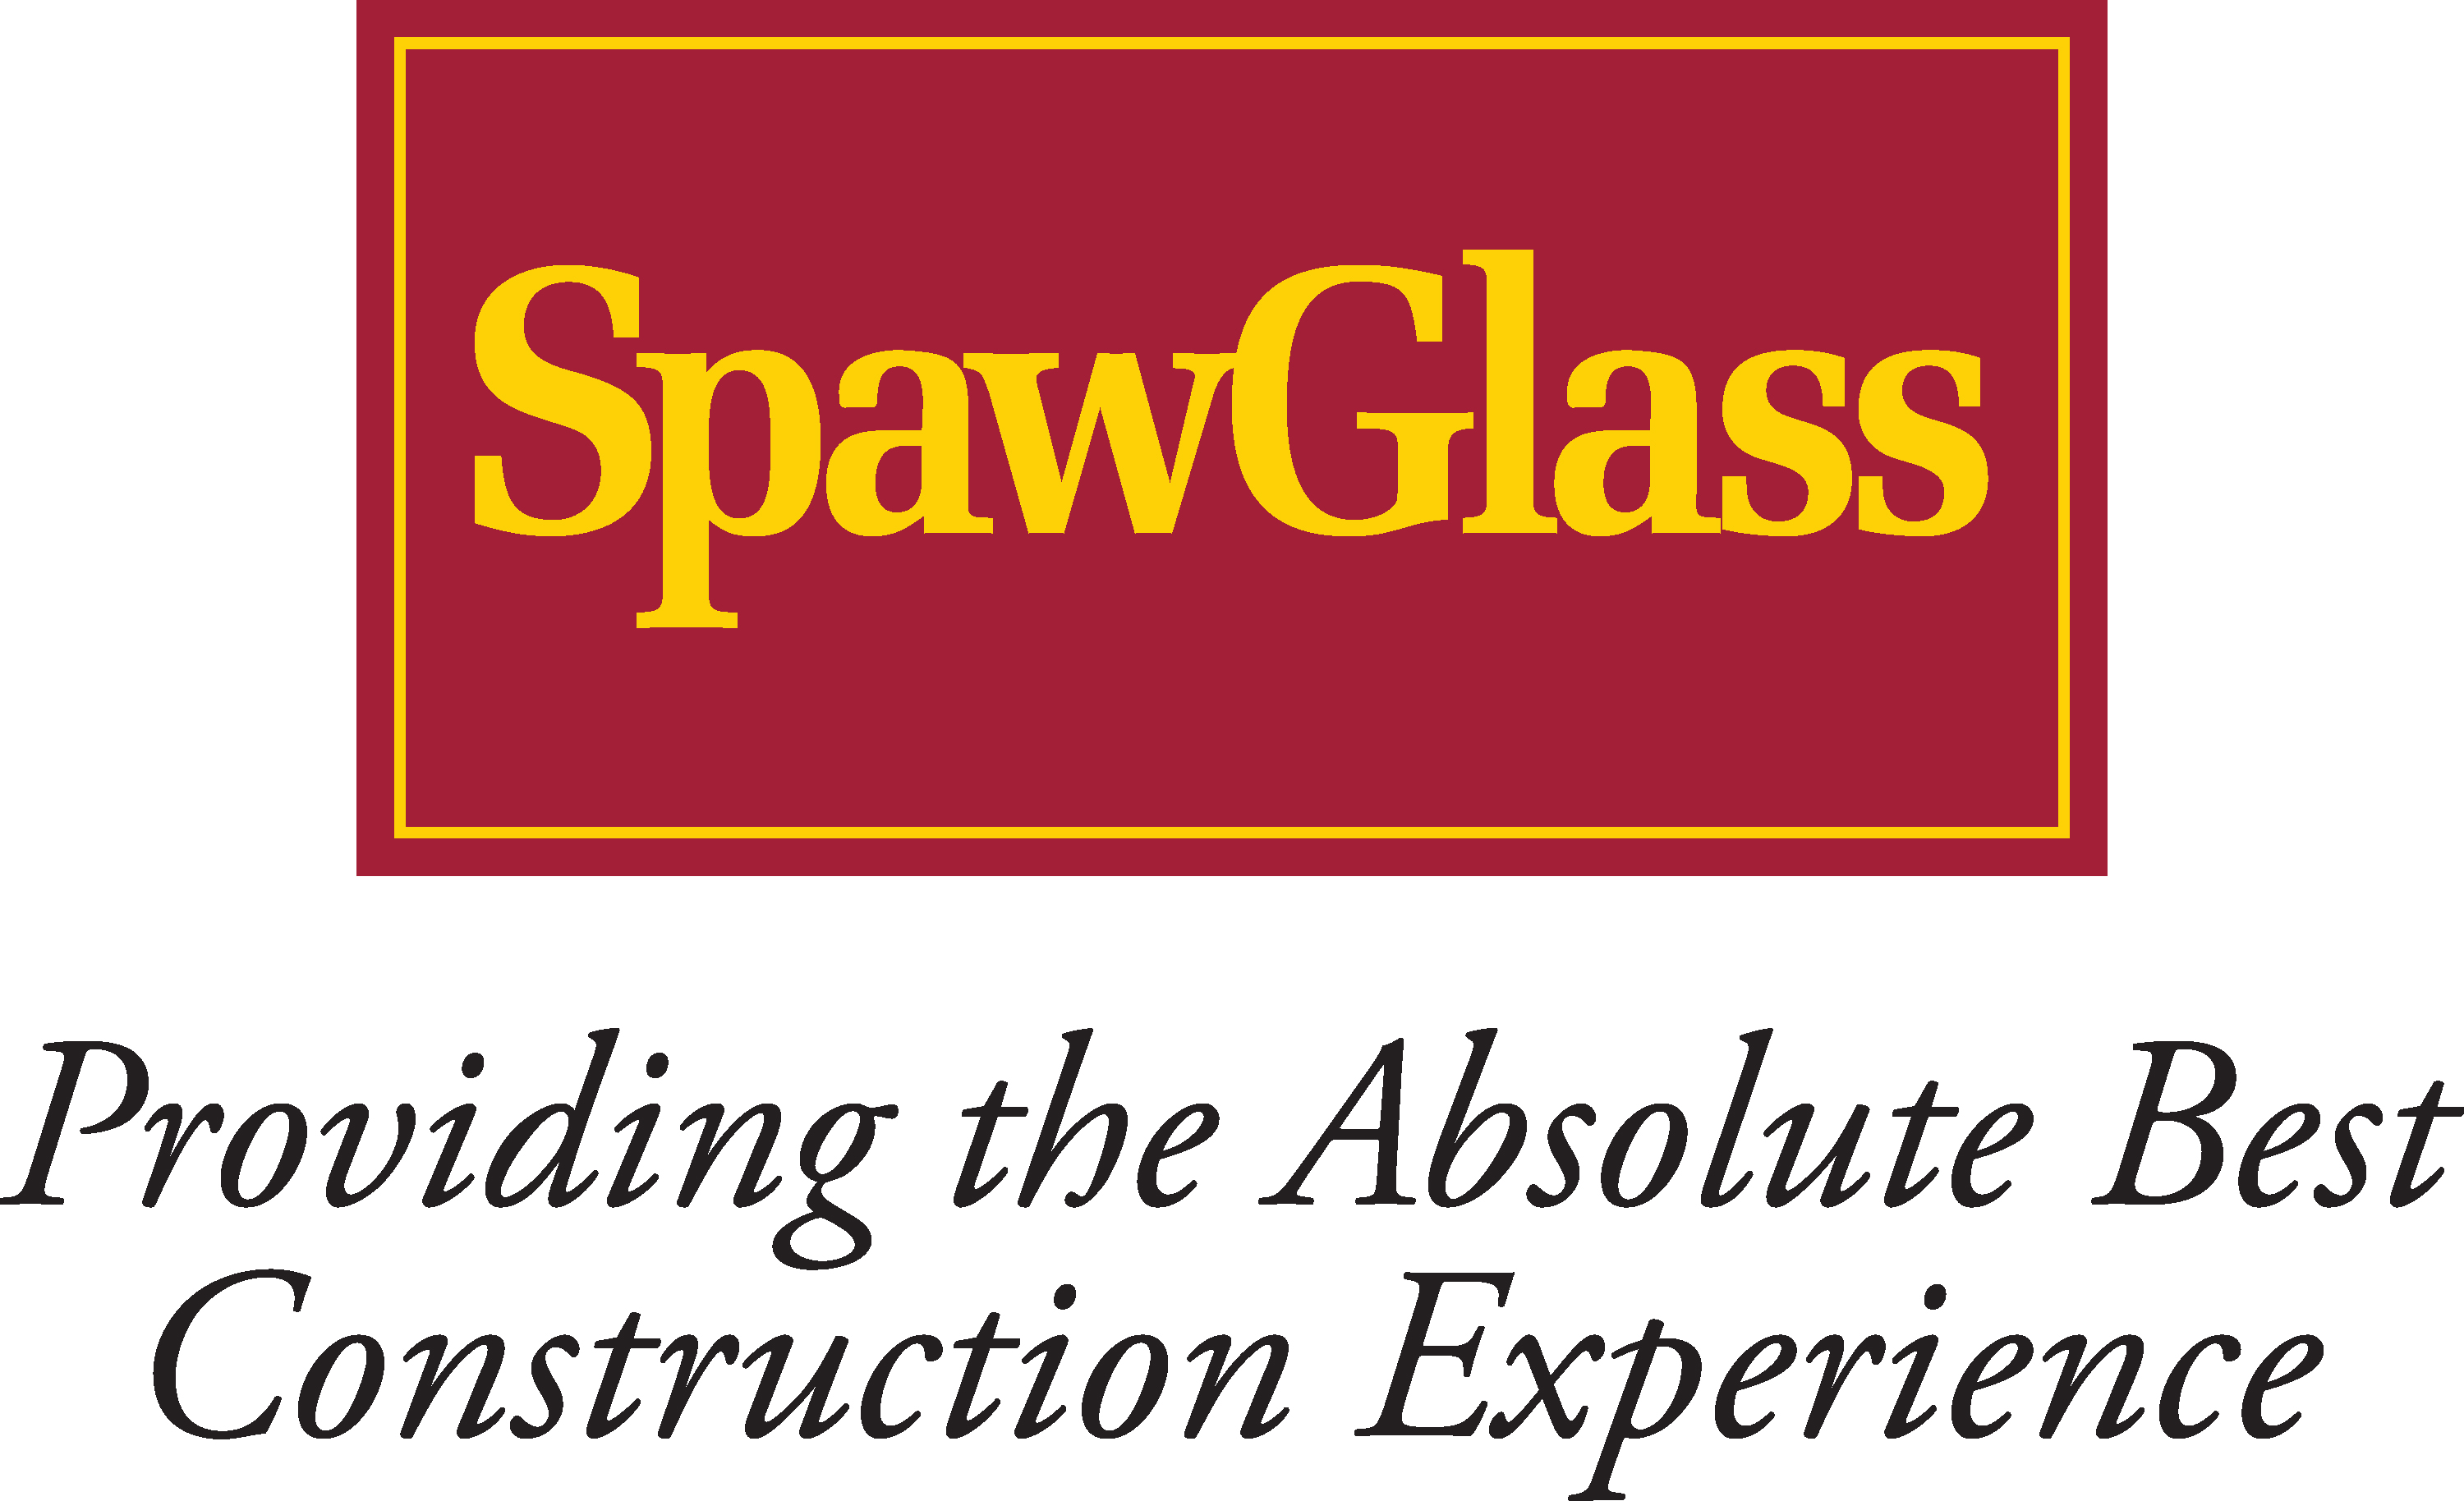 SpawGlass logo